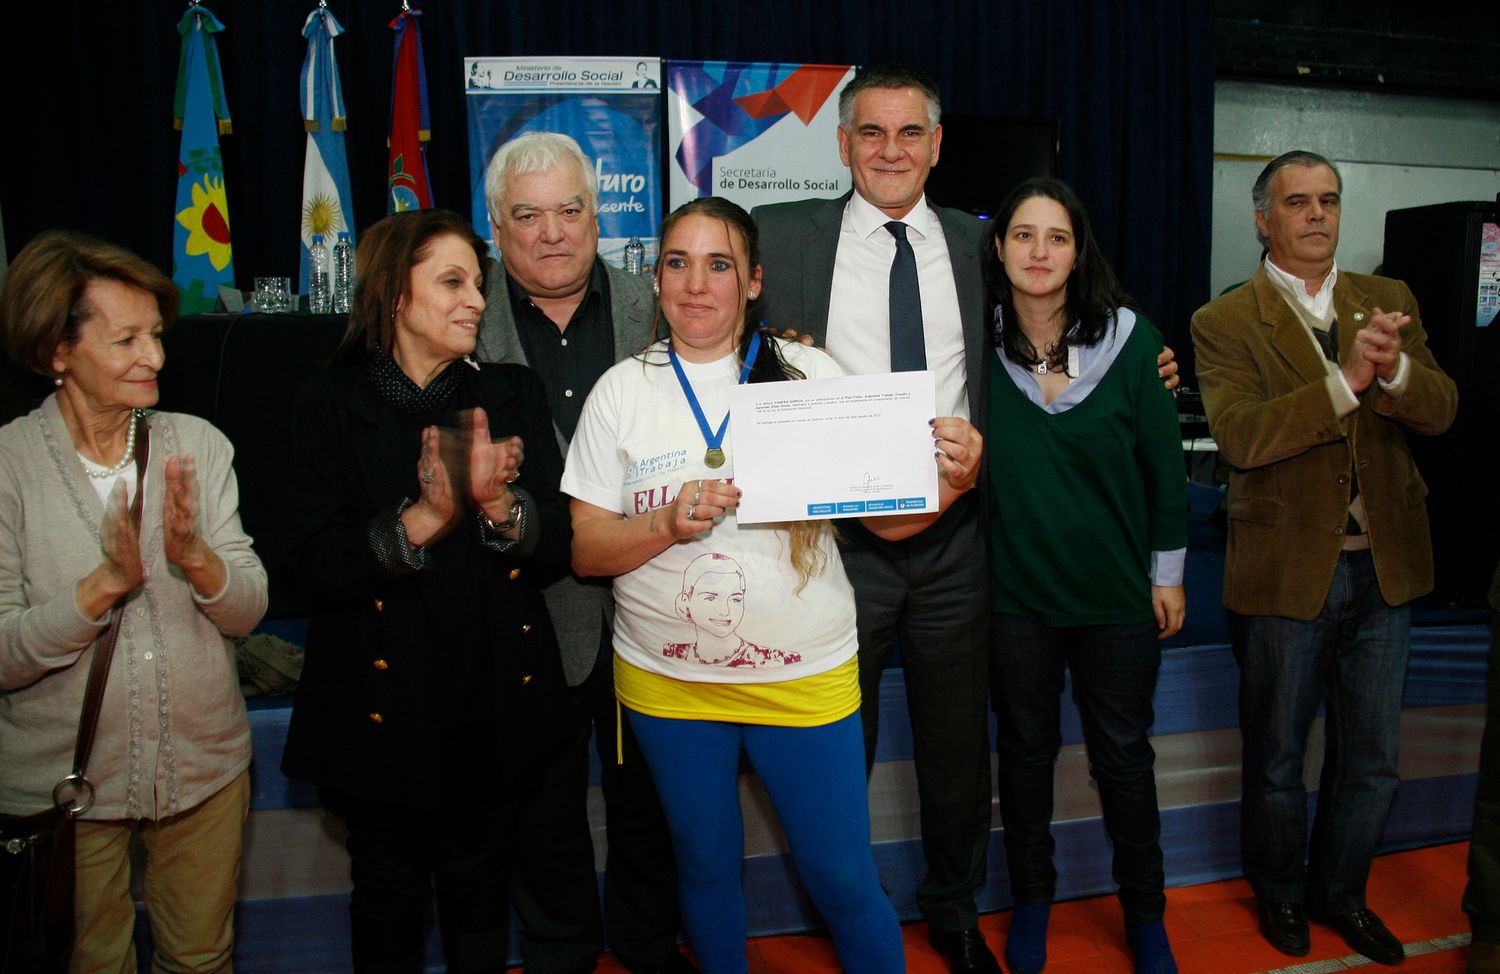 Alicia Kirchner, Castagneto y Carasatorre participaron de acto en Lomas de Zamora